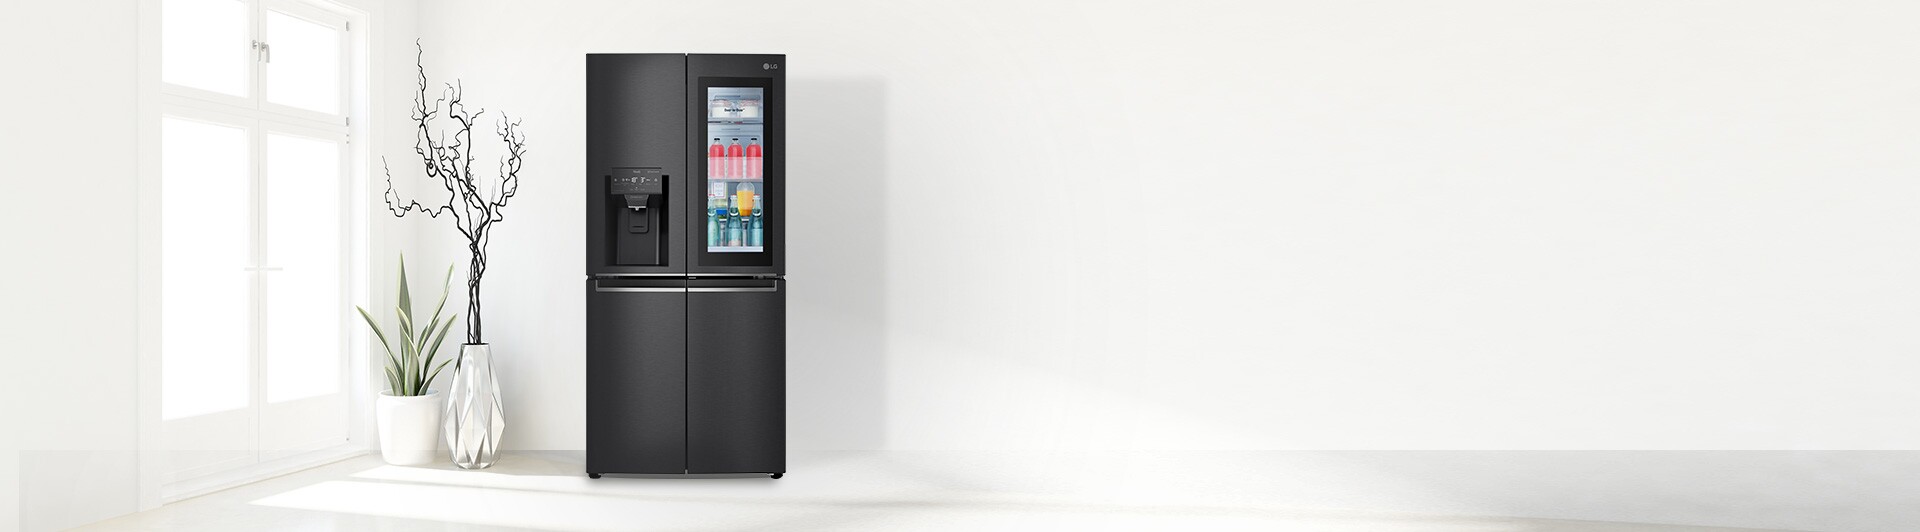 Tủ lạnh LG Inverter 496 lít GR-X22MBI